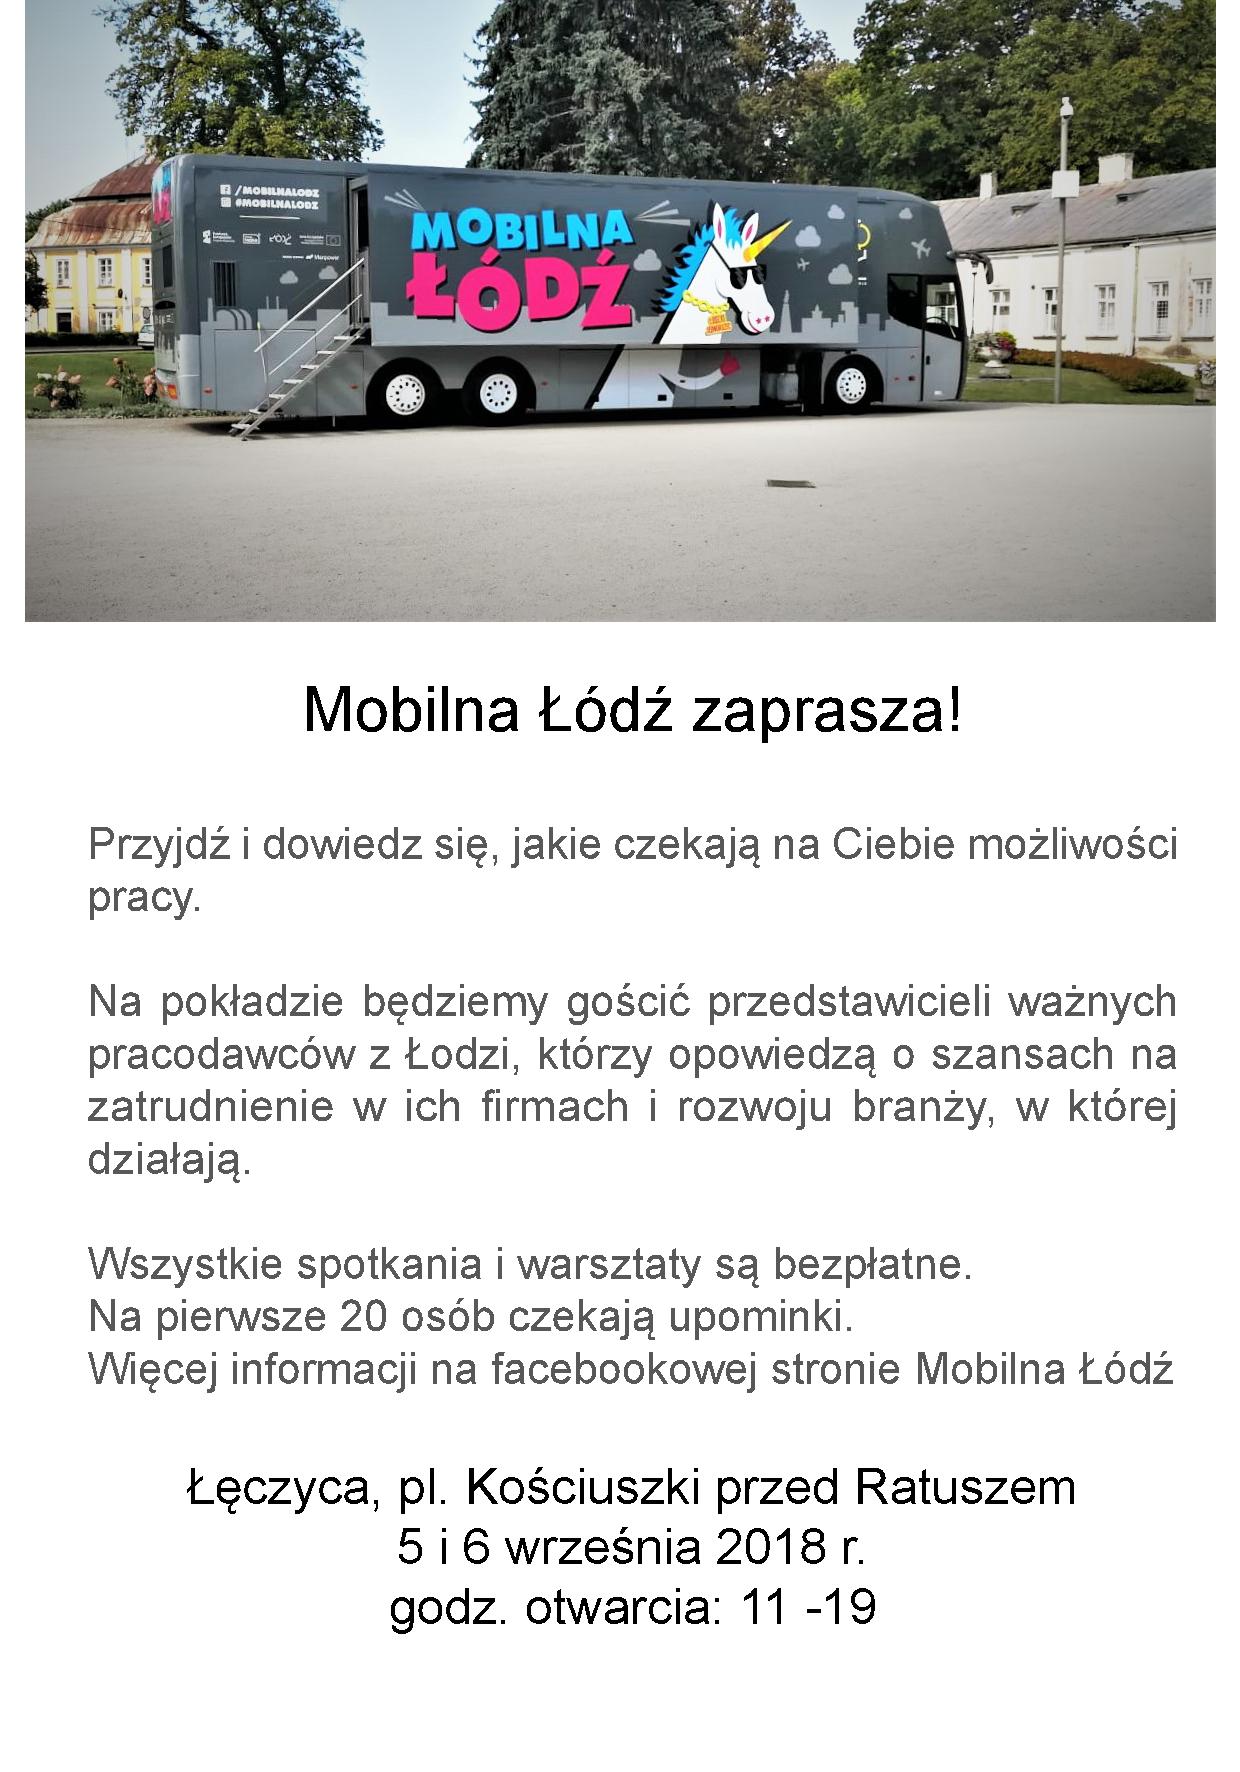 Mobilna Łódź